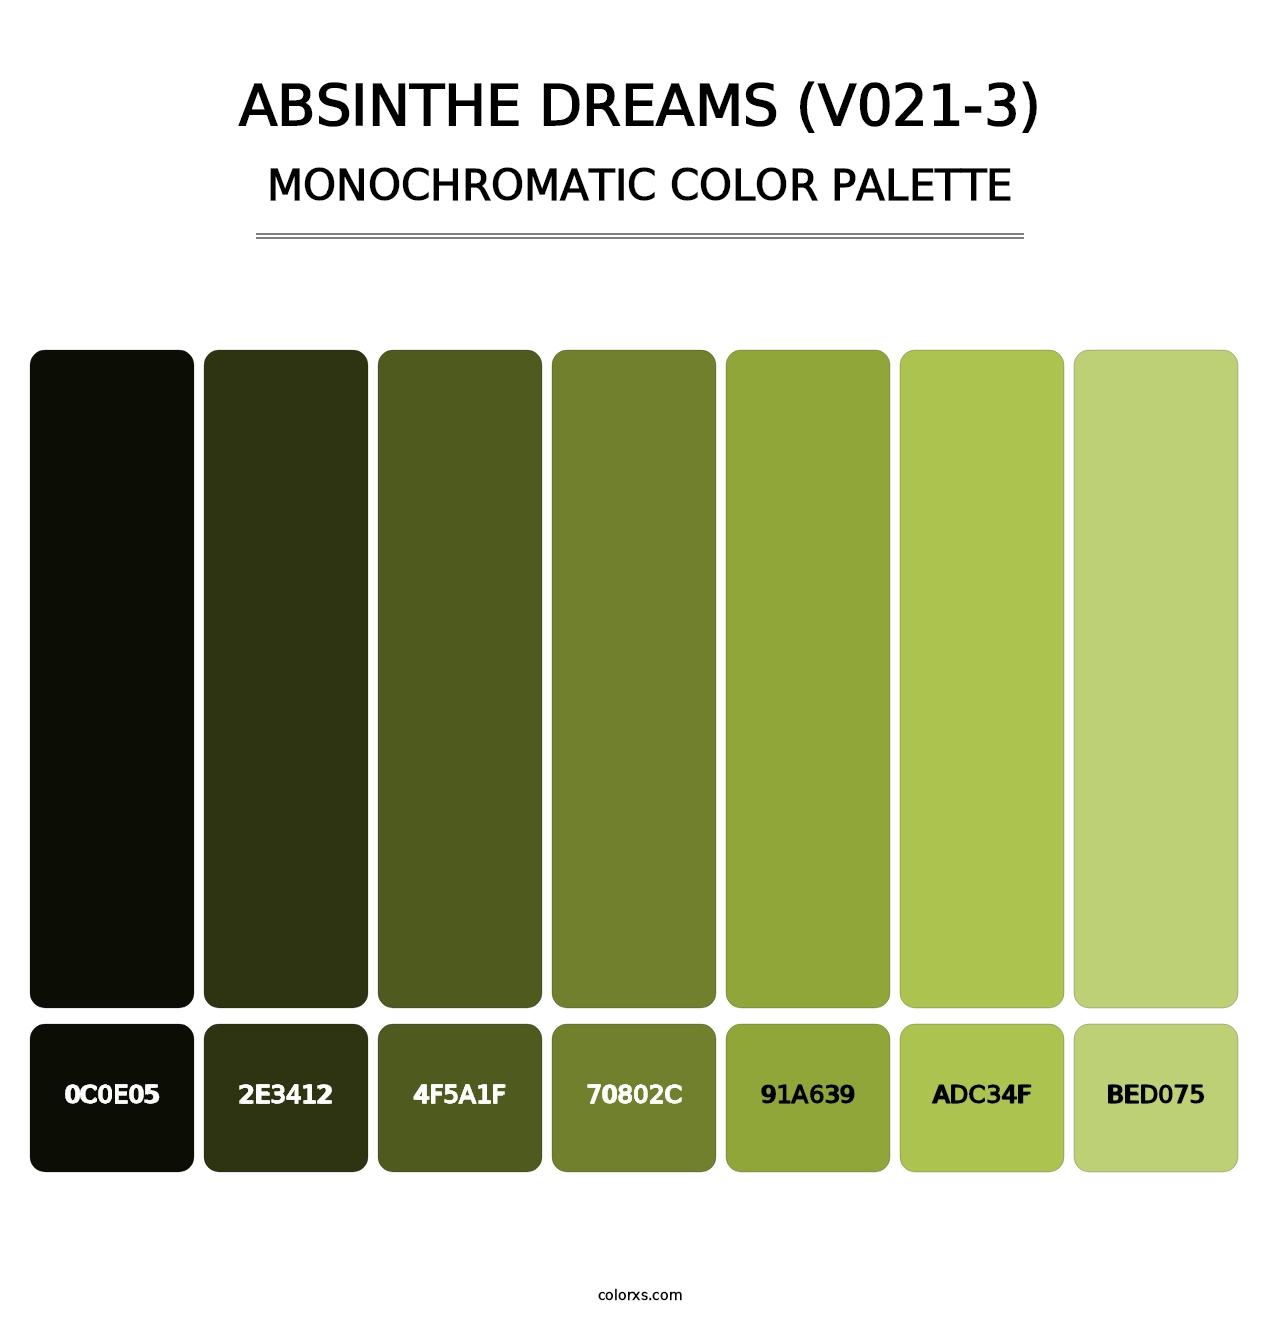 Absinthe Dreams (V021-3) - Monochromatic Color Palette